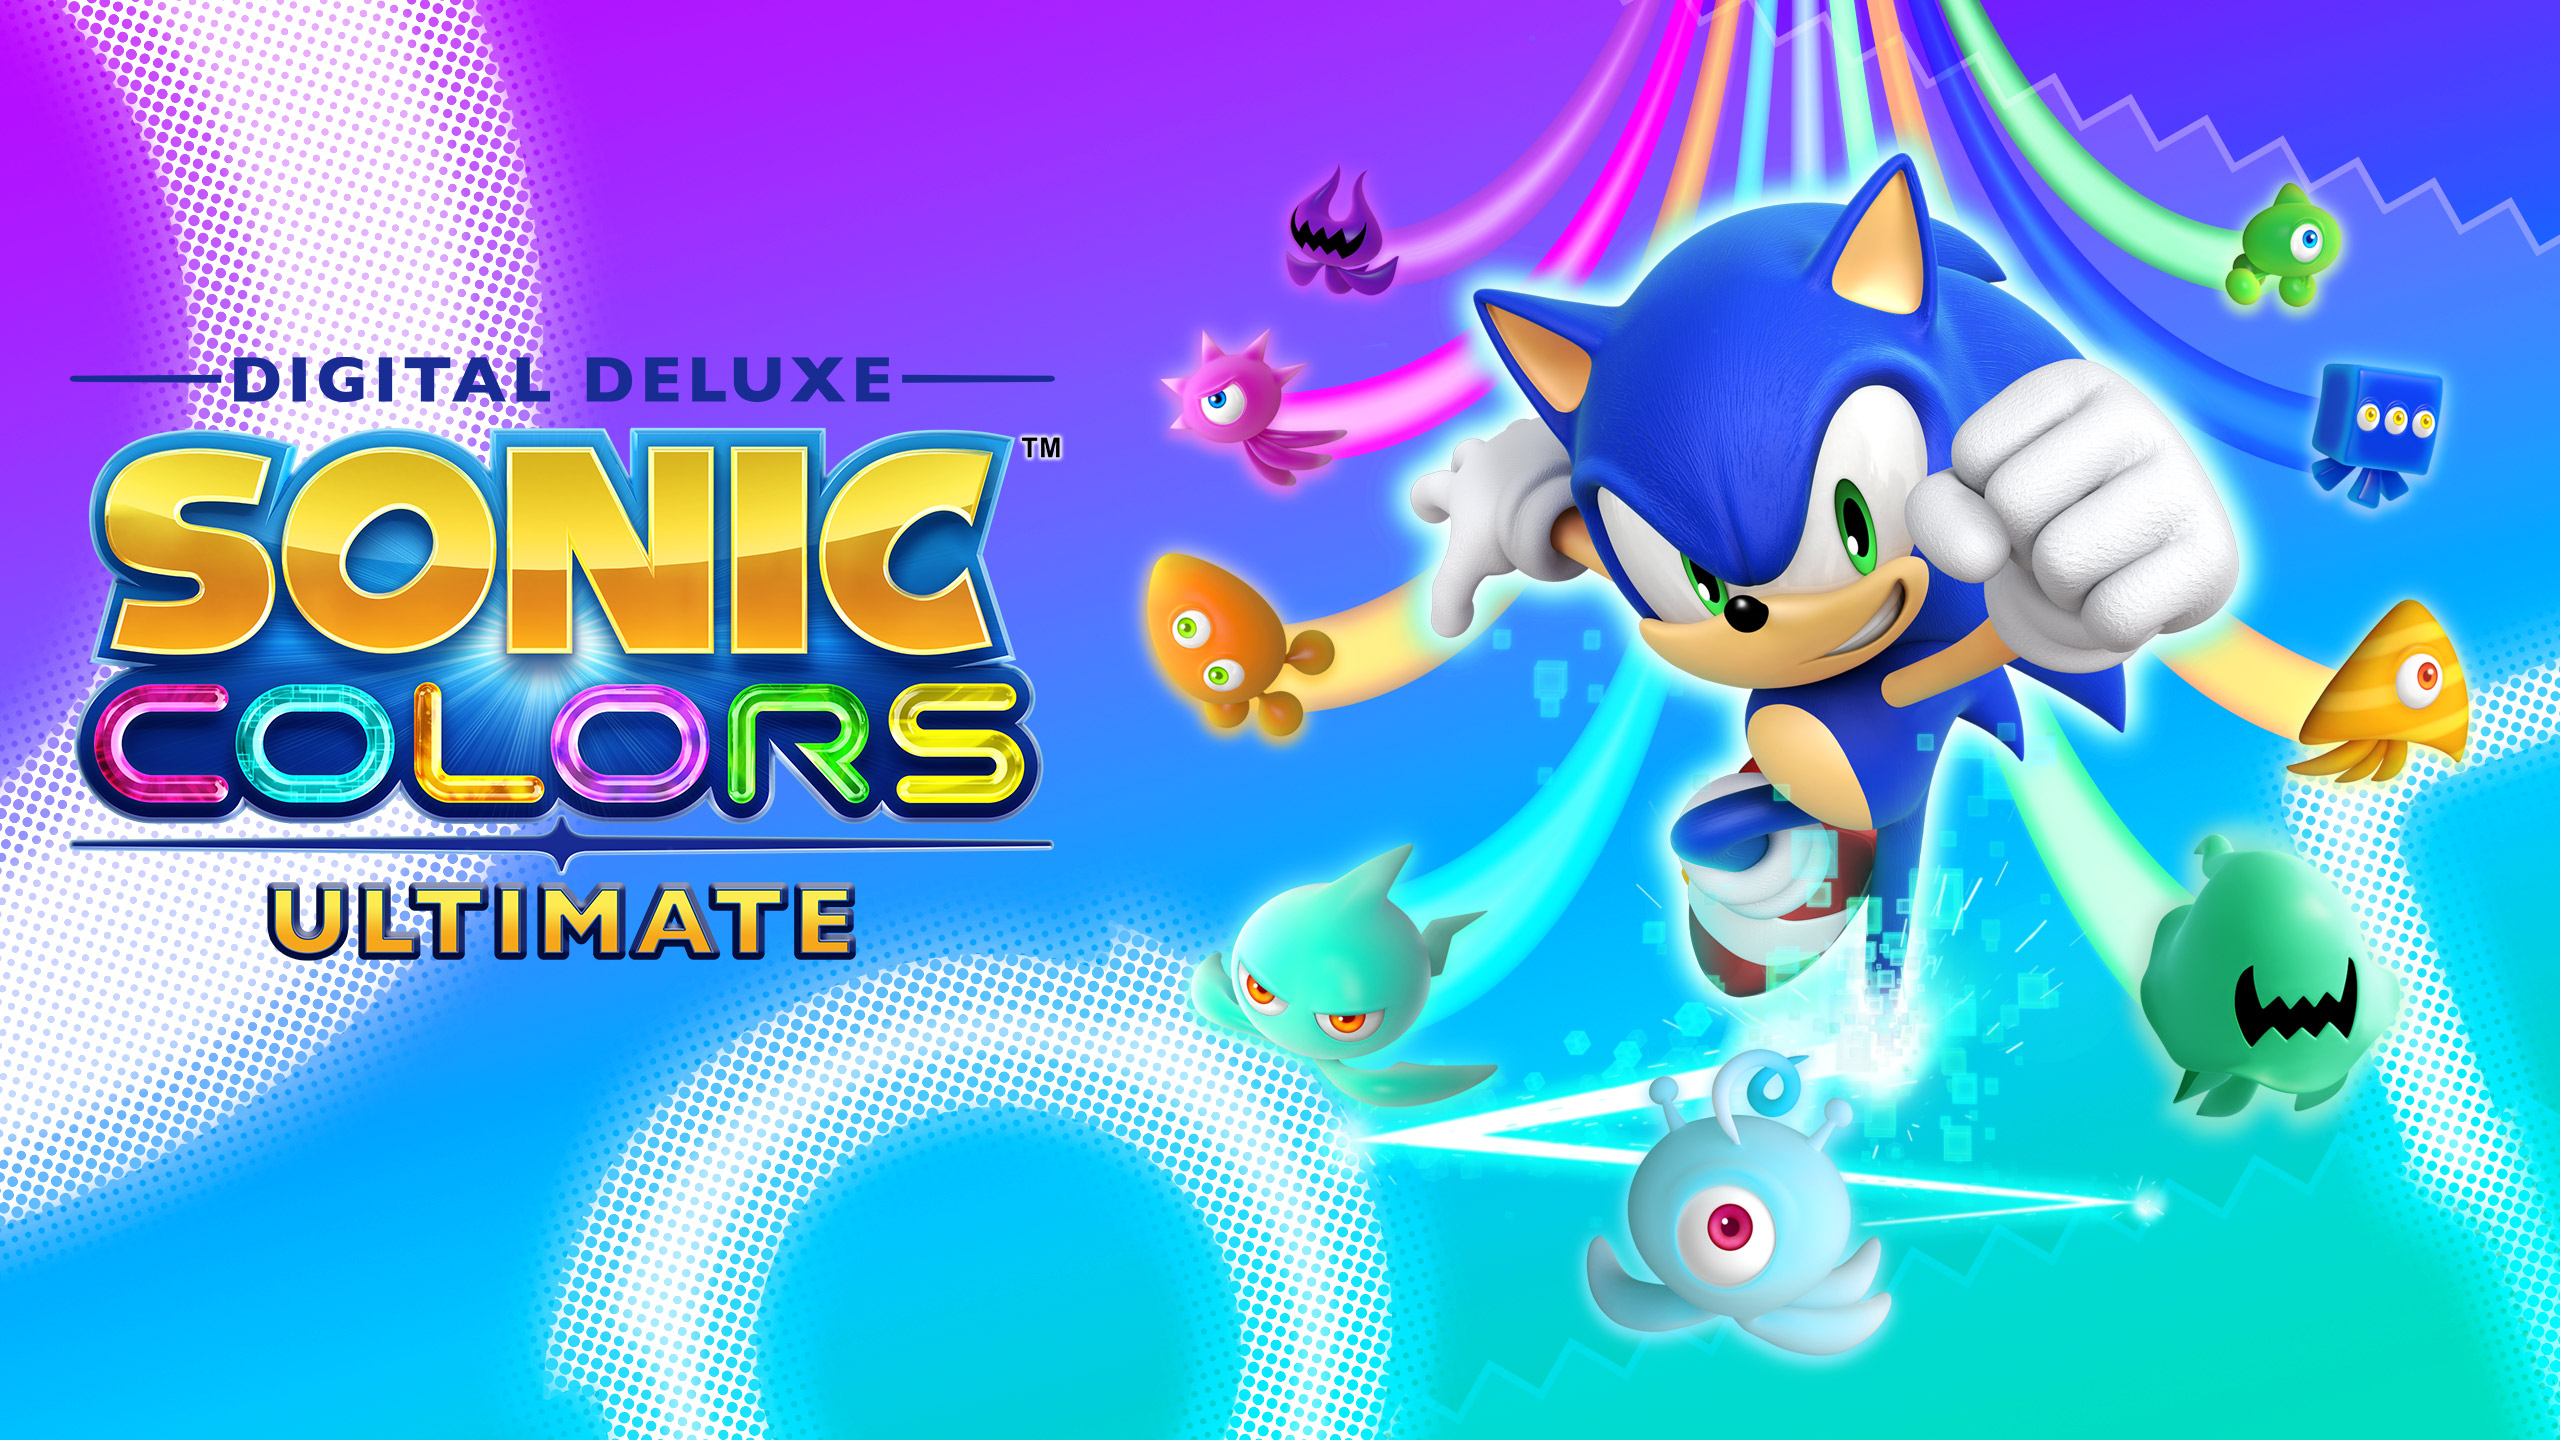 Patch do Sonic Colors Ultimate a caminho para corrigir problemas de lançamento!